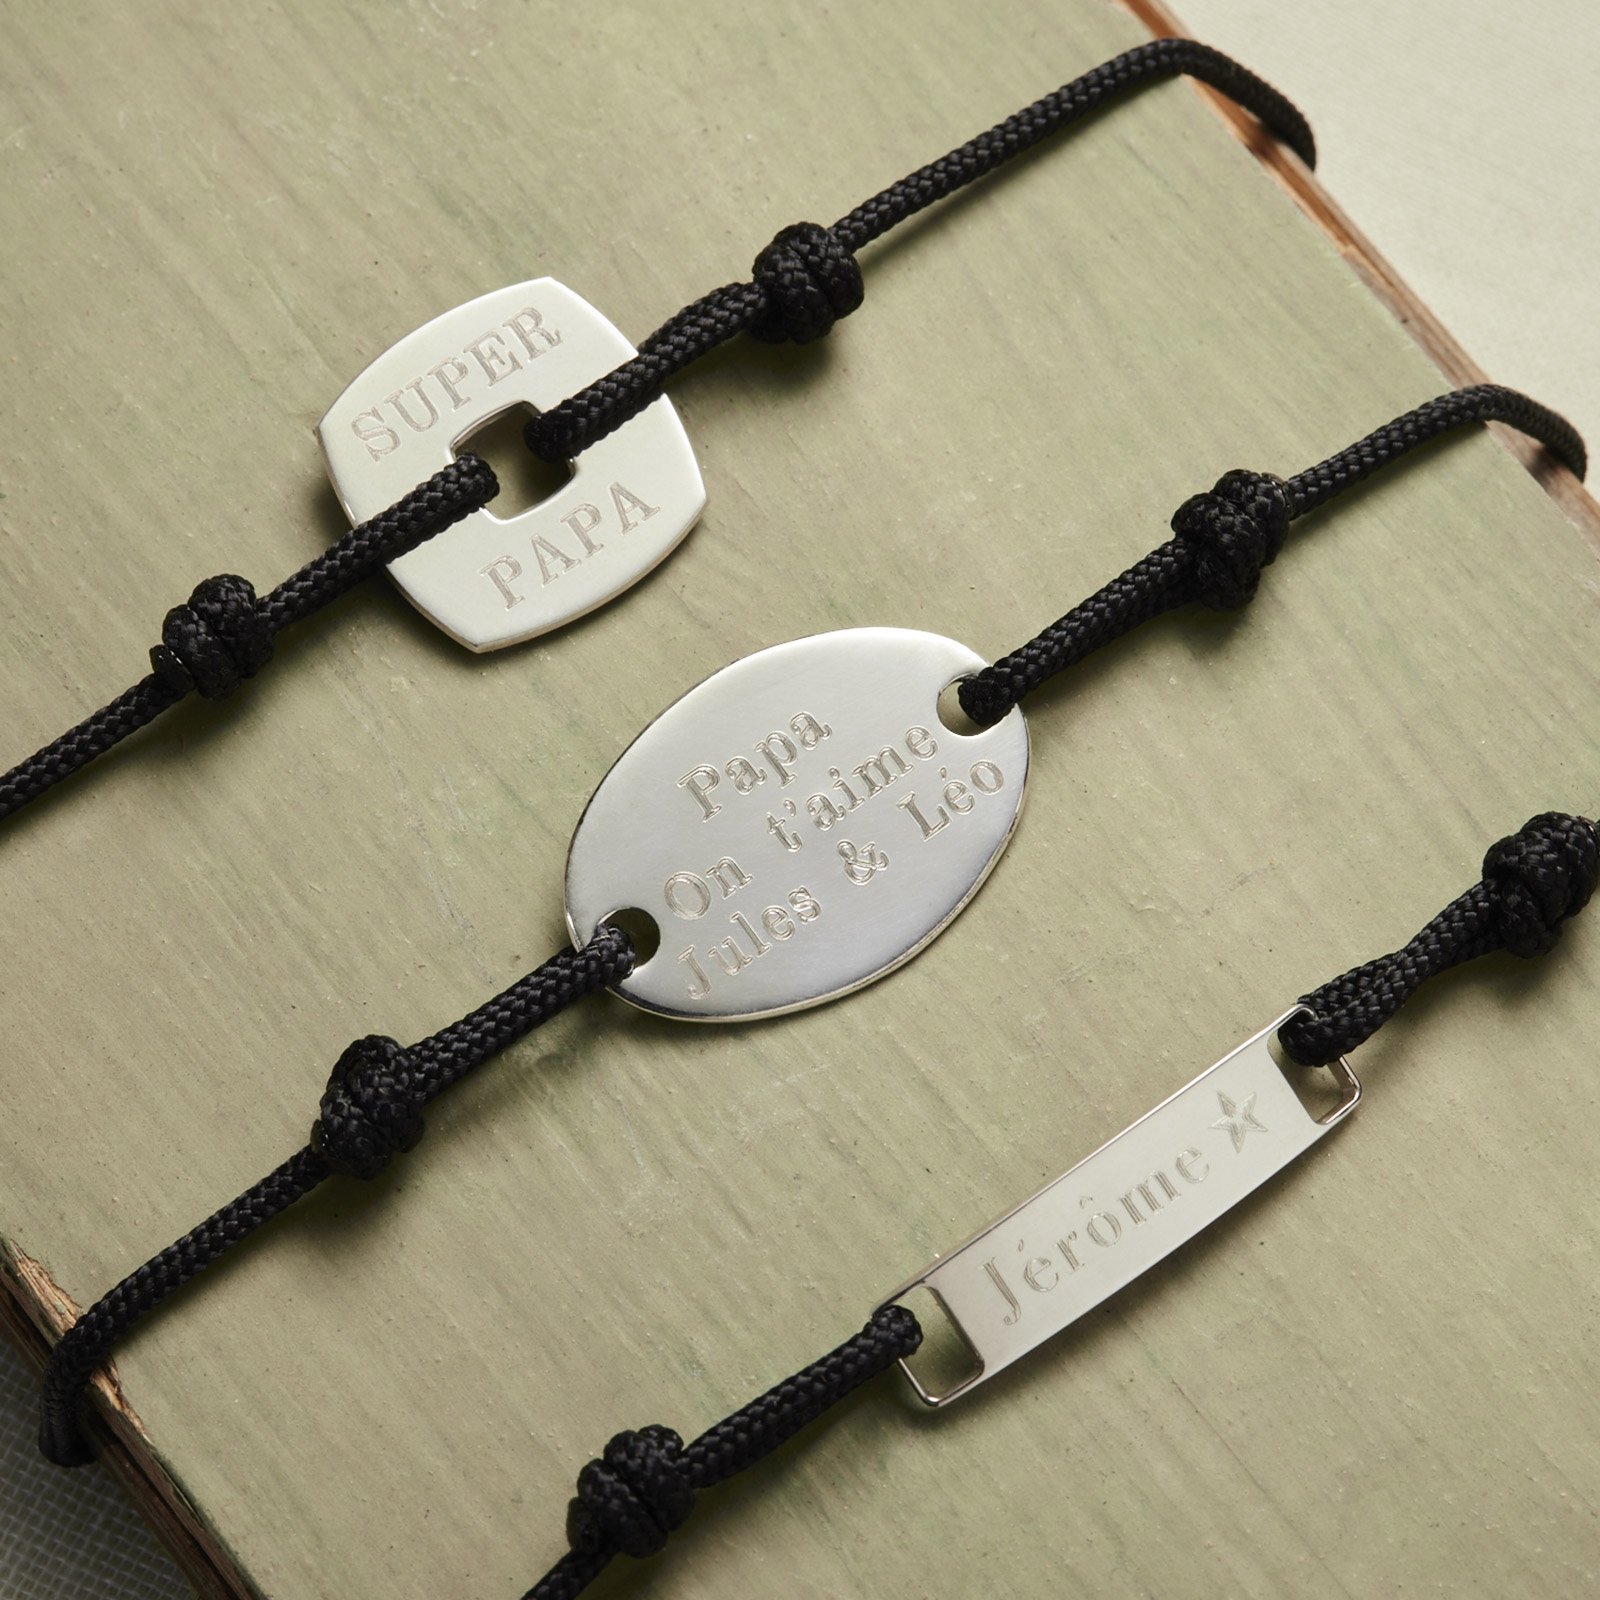 Acheter 2 mètres 4mm Corde de cordon en cuir rond véritable pour bijoux  Perlage Bracelet Collier Résultats